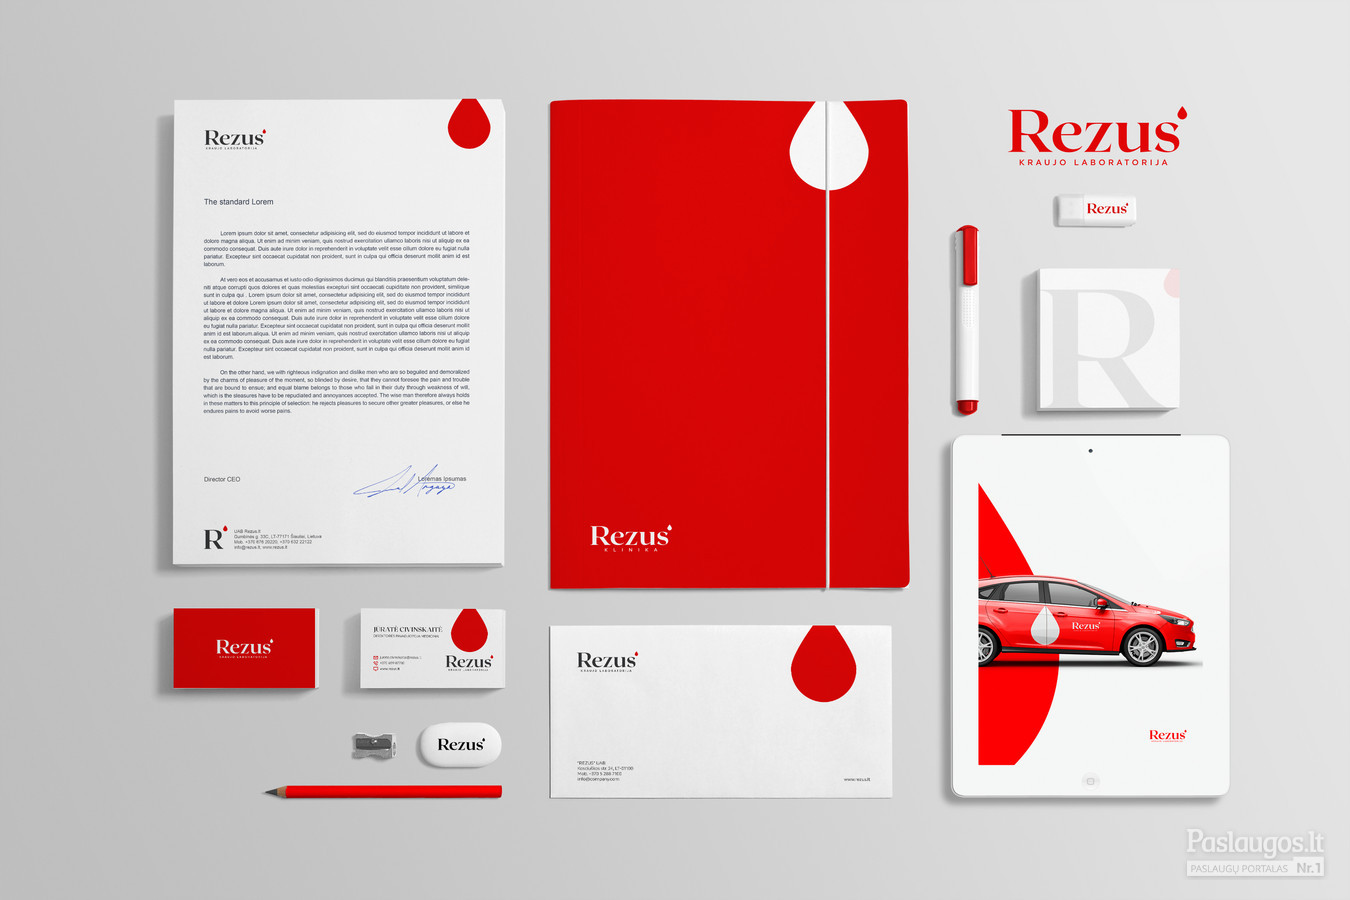 Rezus - kraujo laboratorija, moderni ir inovatyvi įmonė, teikianti medicinos laboratorines paslaugas   |   Logotipų kūrimas - www.glogo.eu - logo creation.